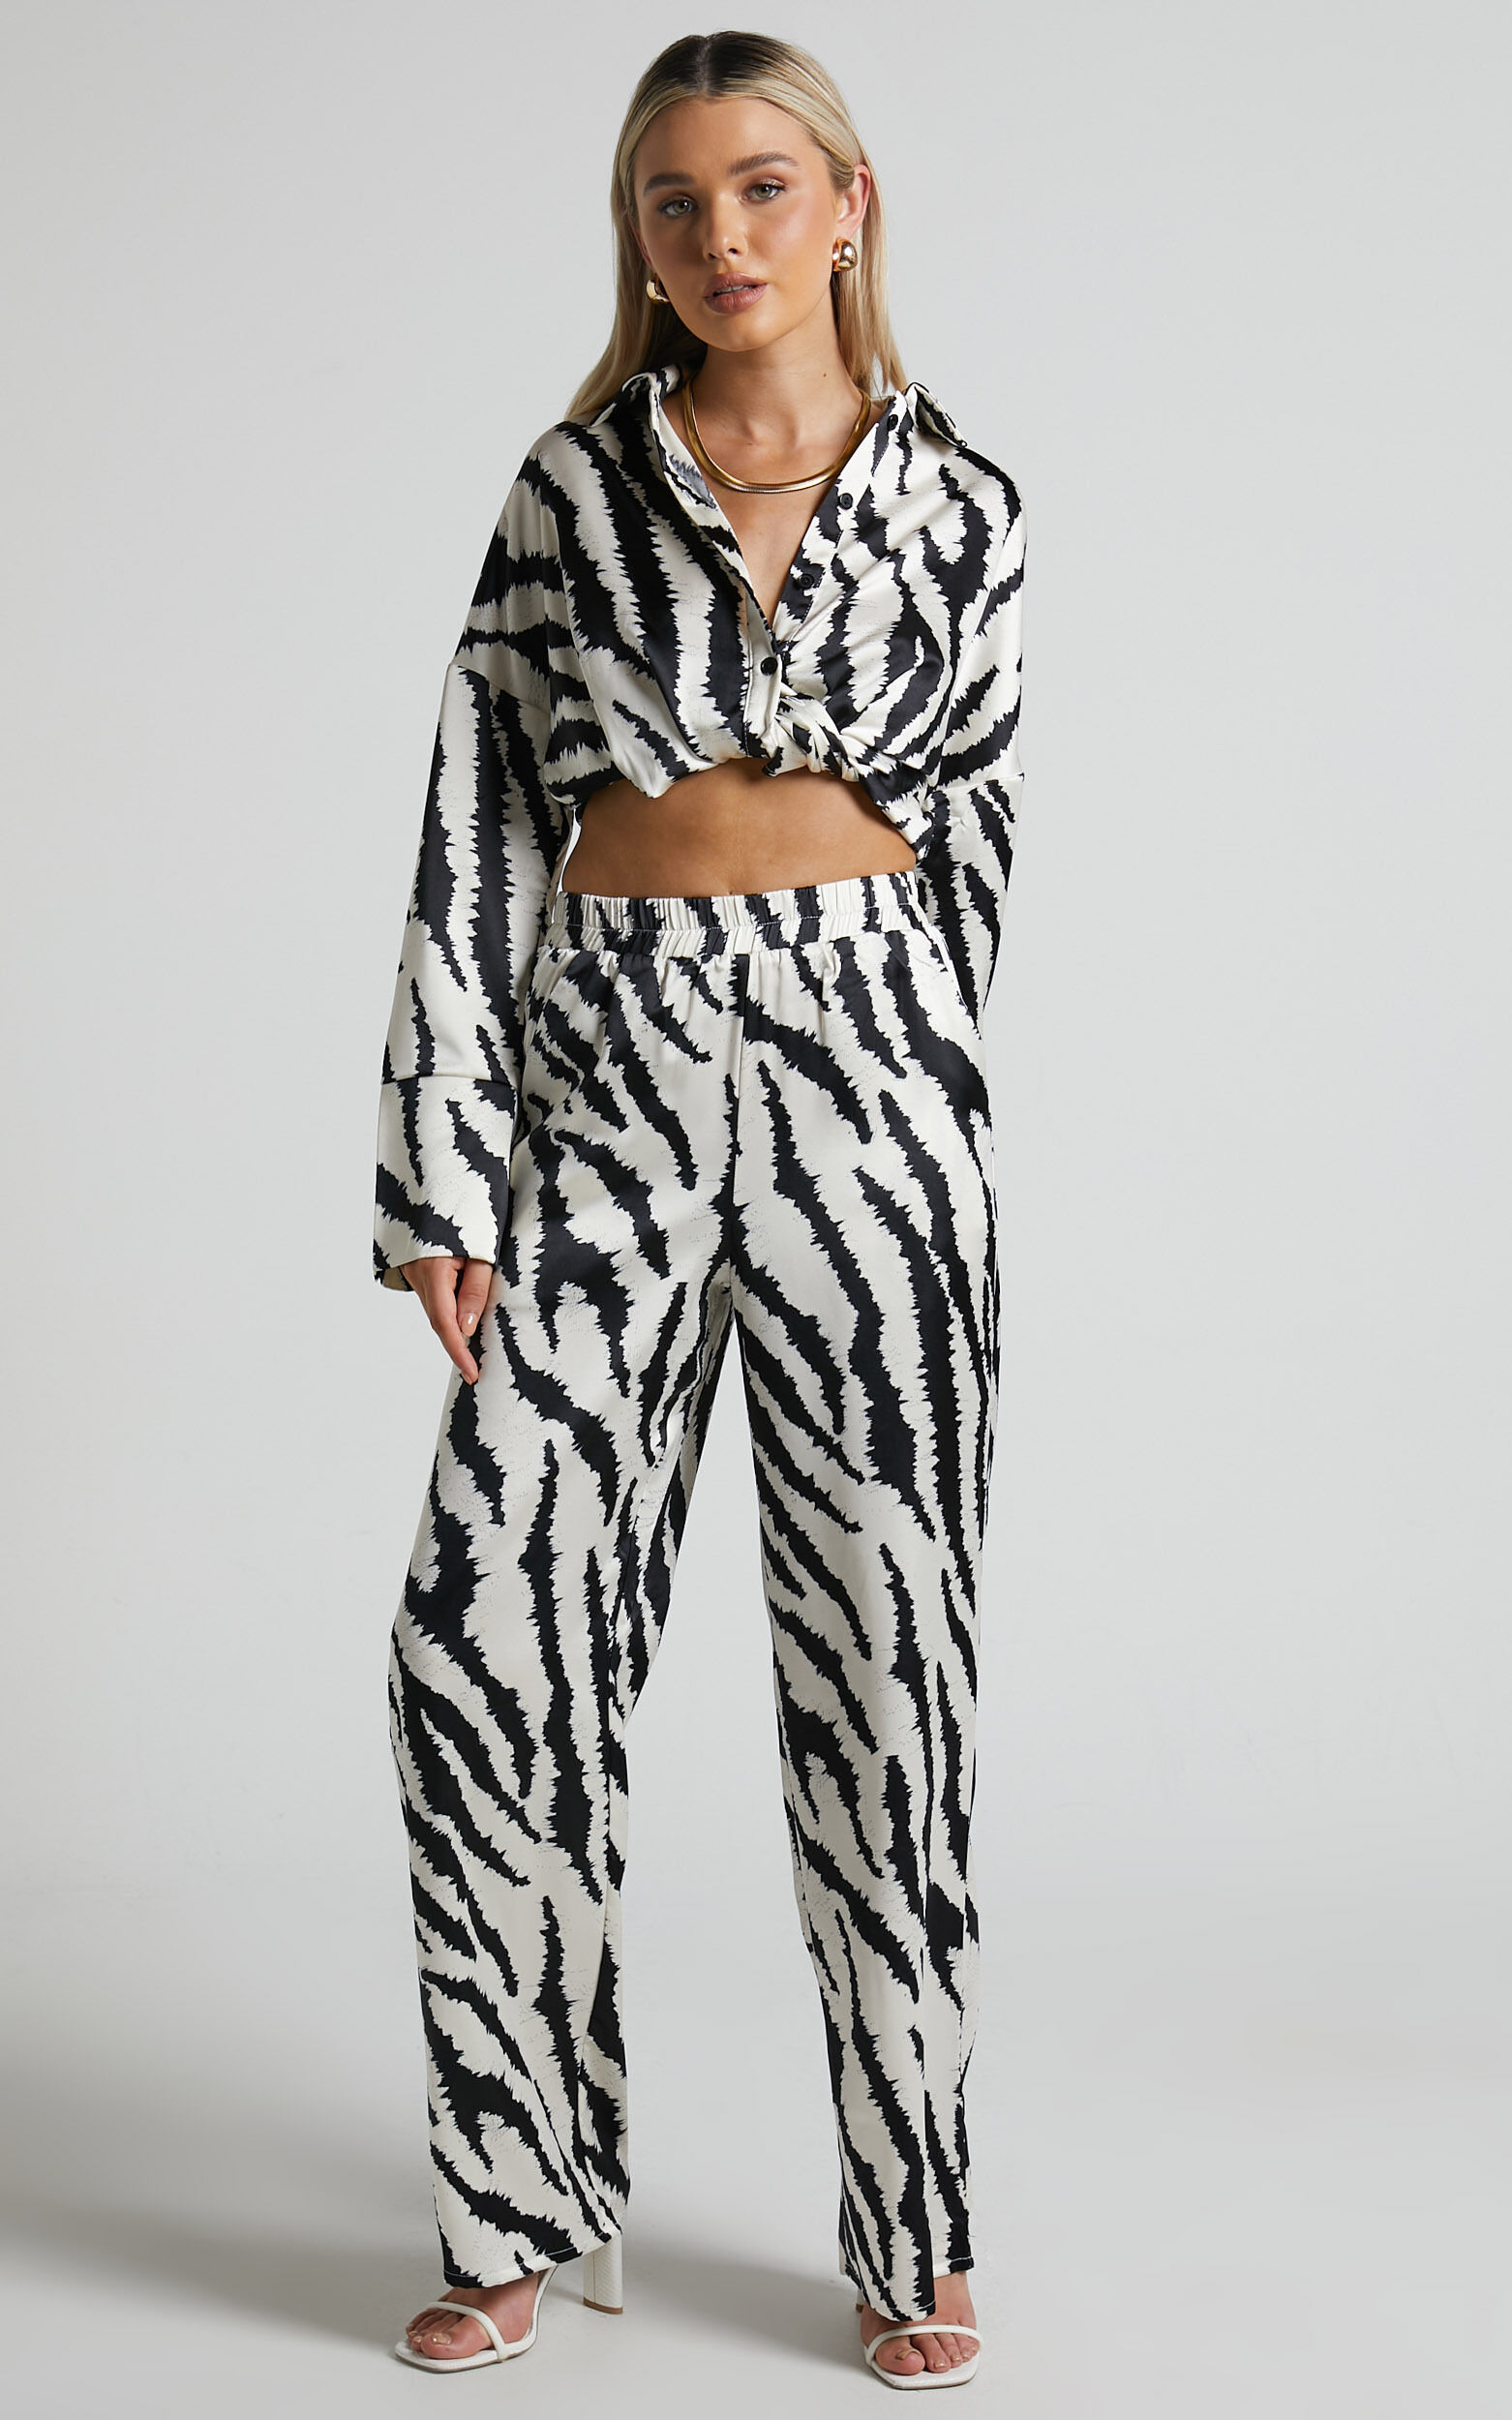 4th & Reckless - Inez Trouser in Navy Zebra | Showpo USA